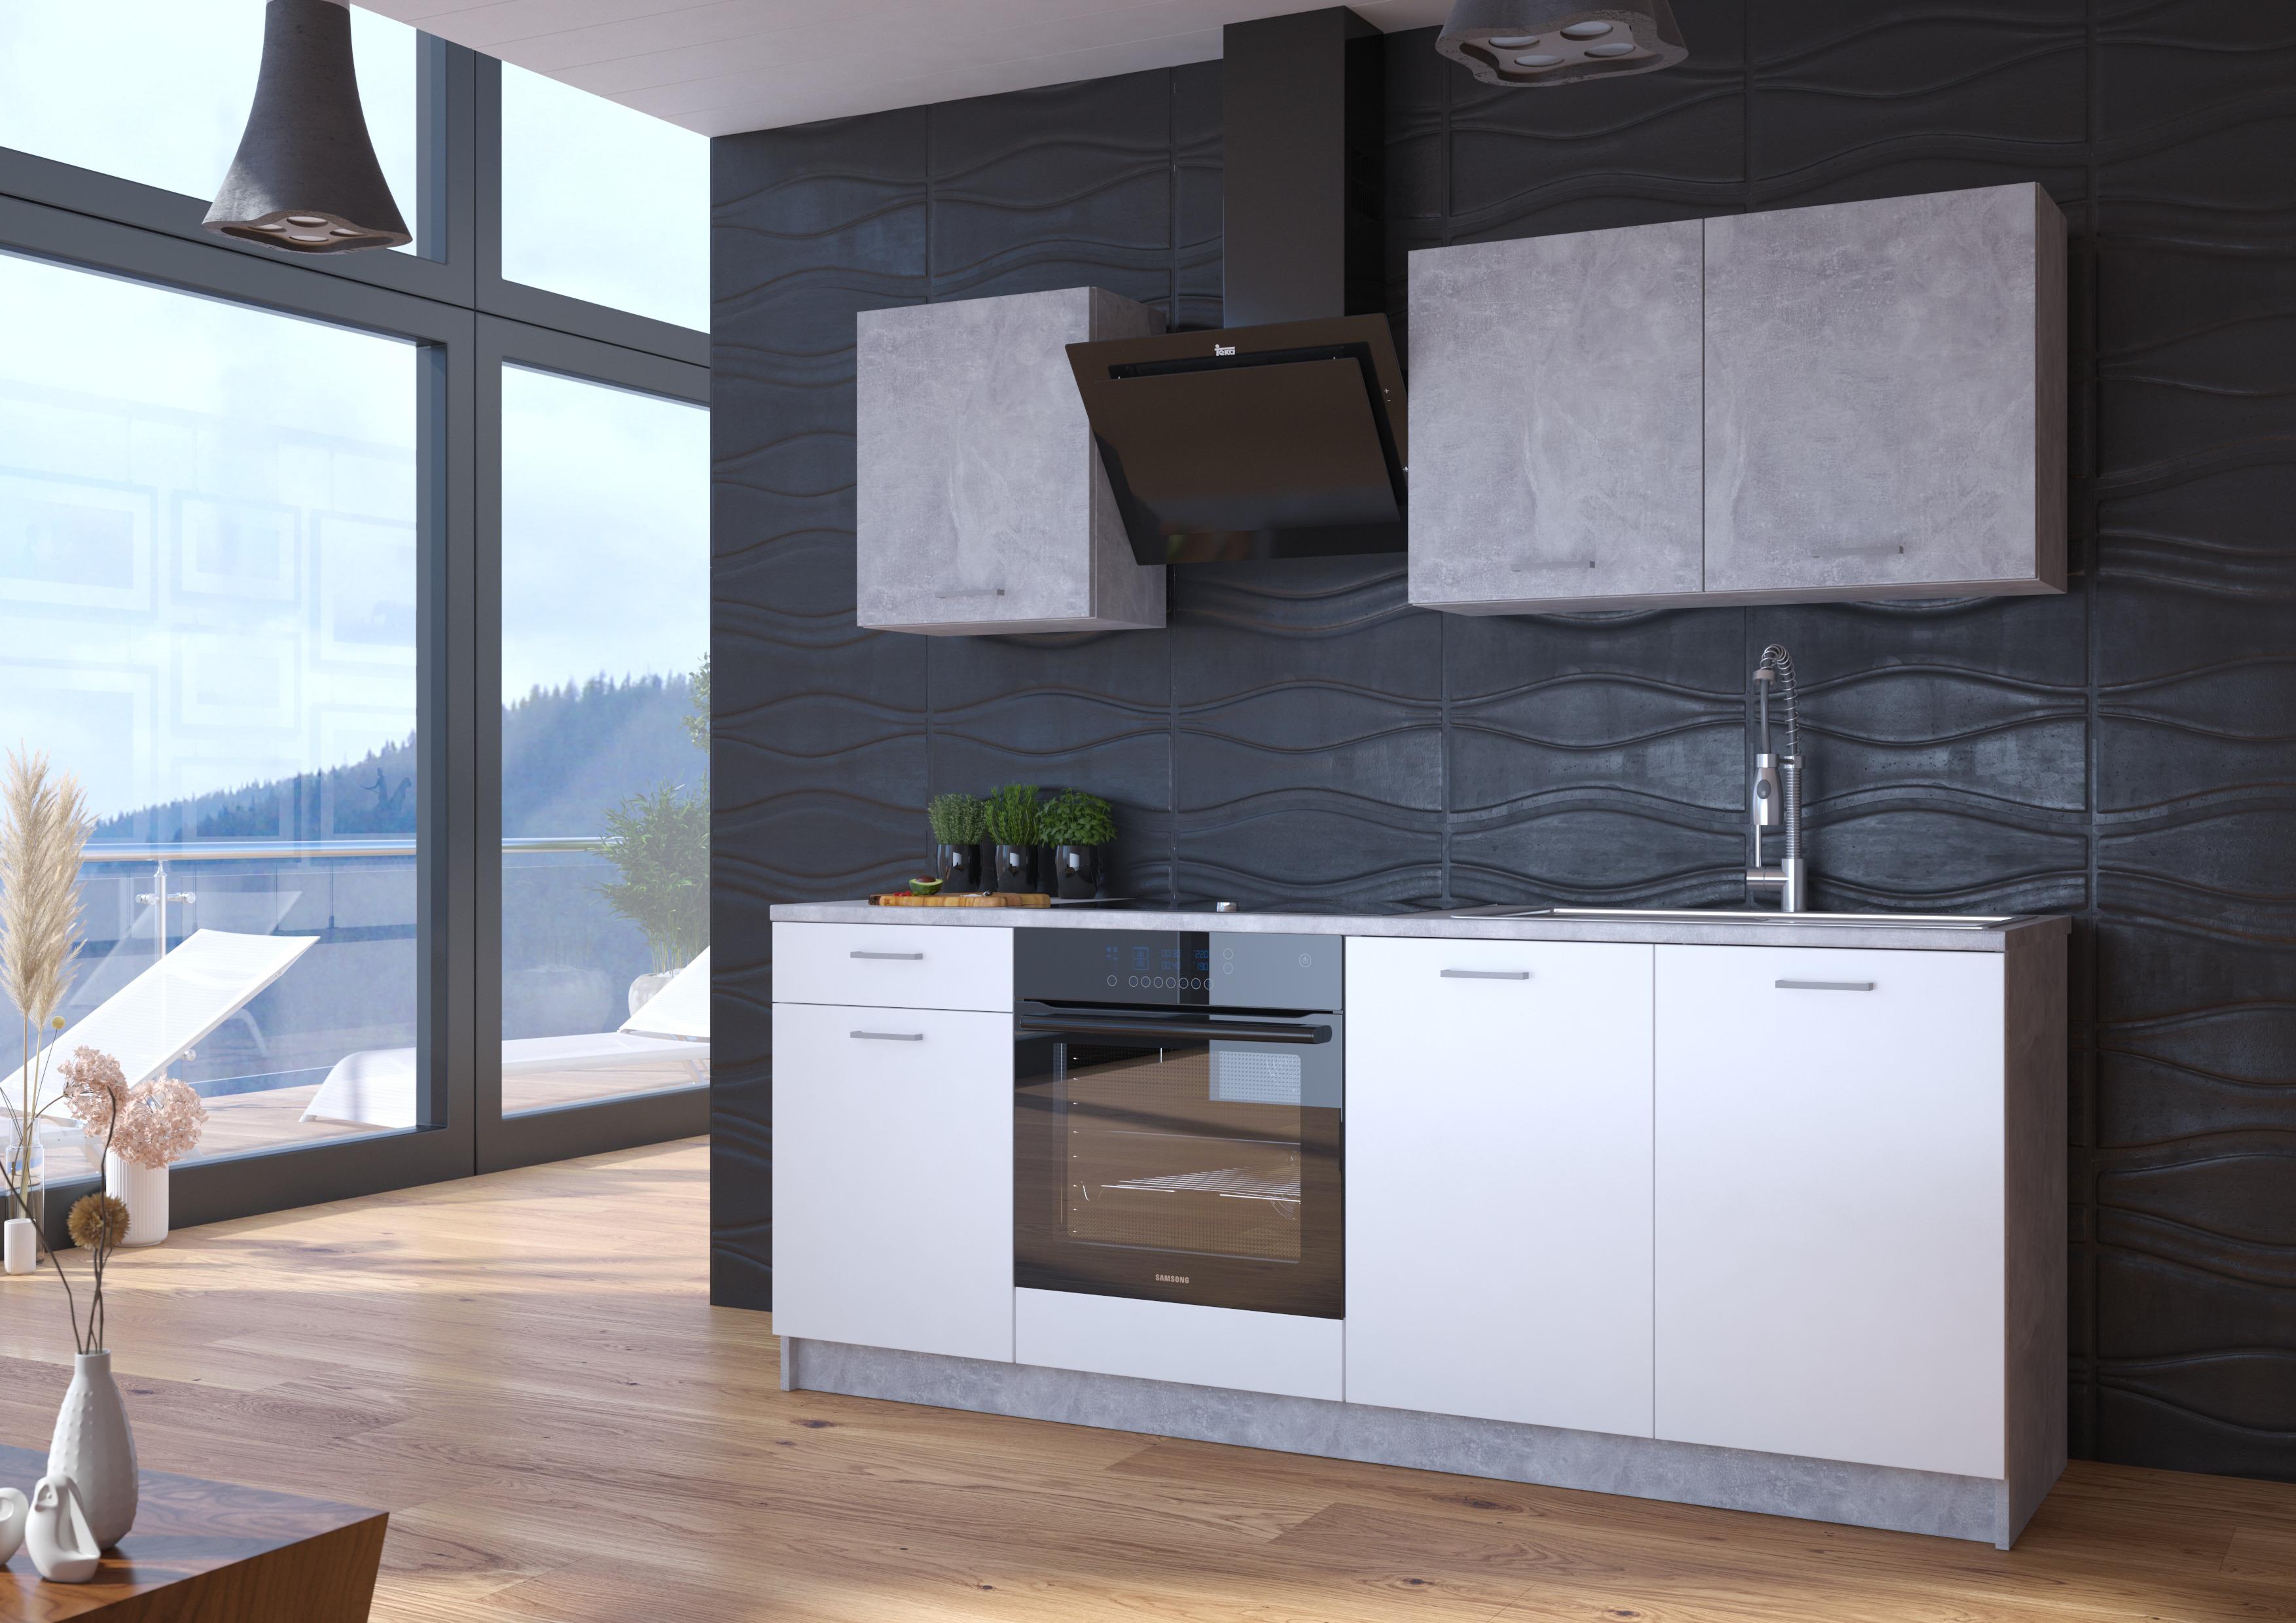 Küchenzeile Stone ohne Geräte 207 cm Betonoptik/Weiß Modern - Weiß, KONVENTIONELL, Holzwerkstoff (207cm)